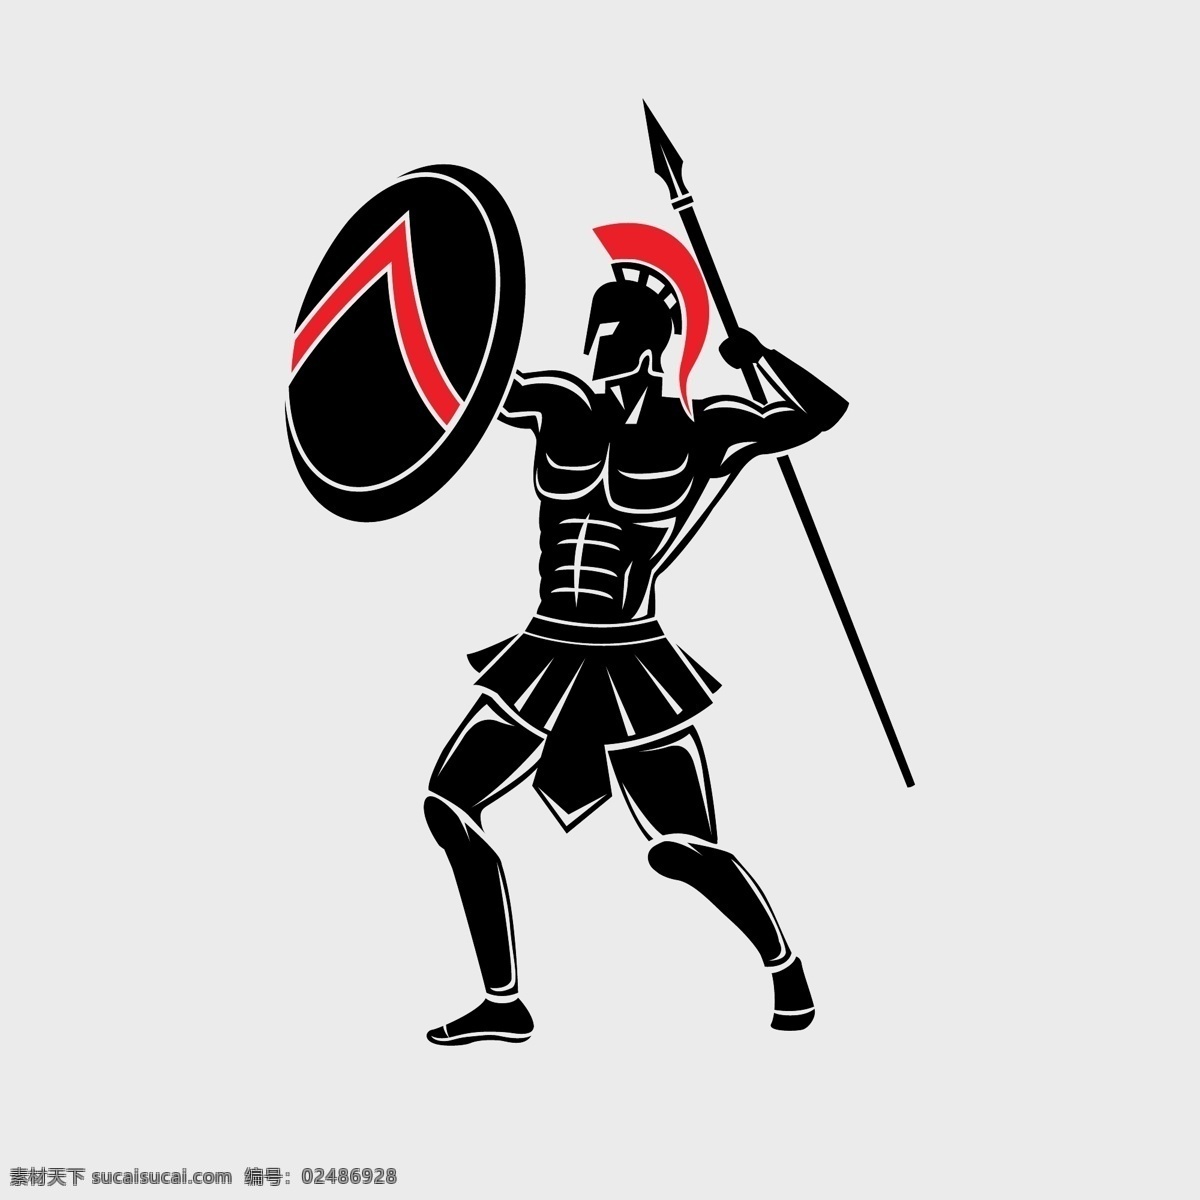 斯巴达战士 战士盔甲 矢量战士 欧洲战士 古代战士 战士剪影 矢量战士插画 卡通战士 手绘战士 战士姿势 长矛 红色披肩 人物卡通 人物图库 男性男人